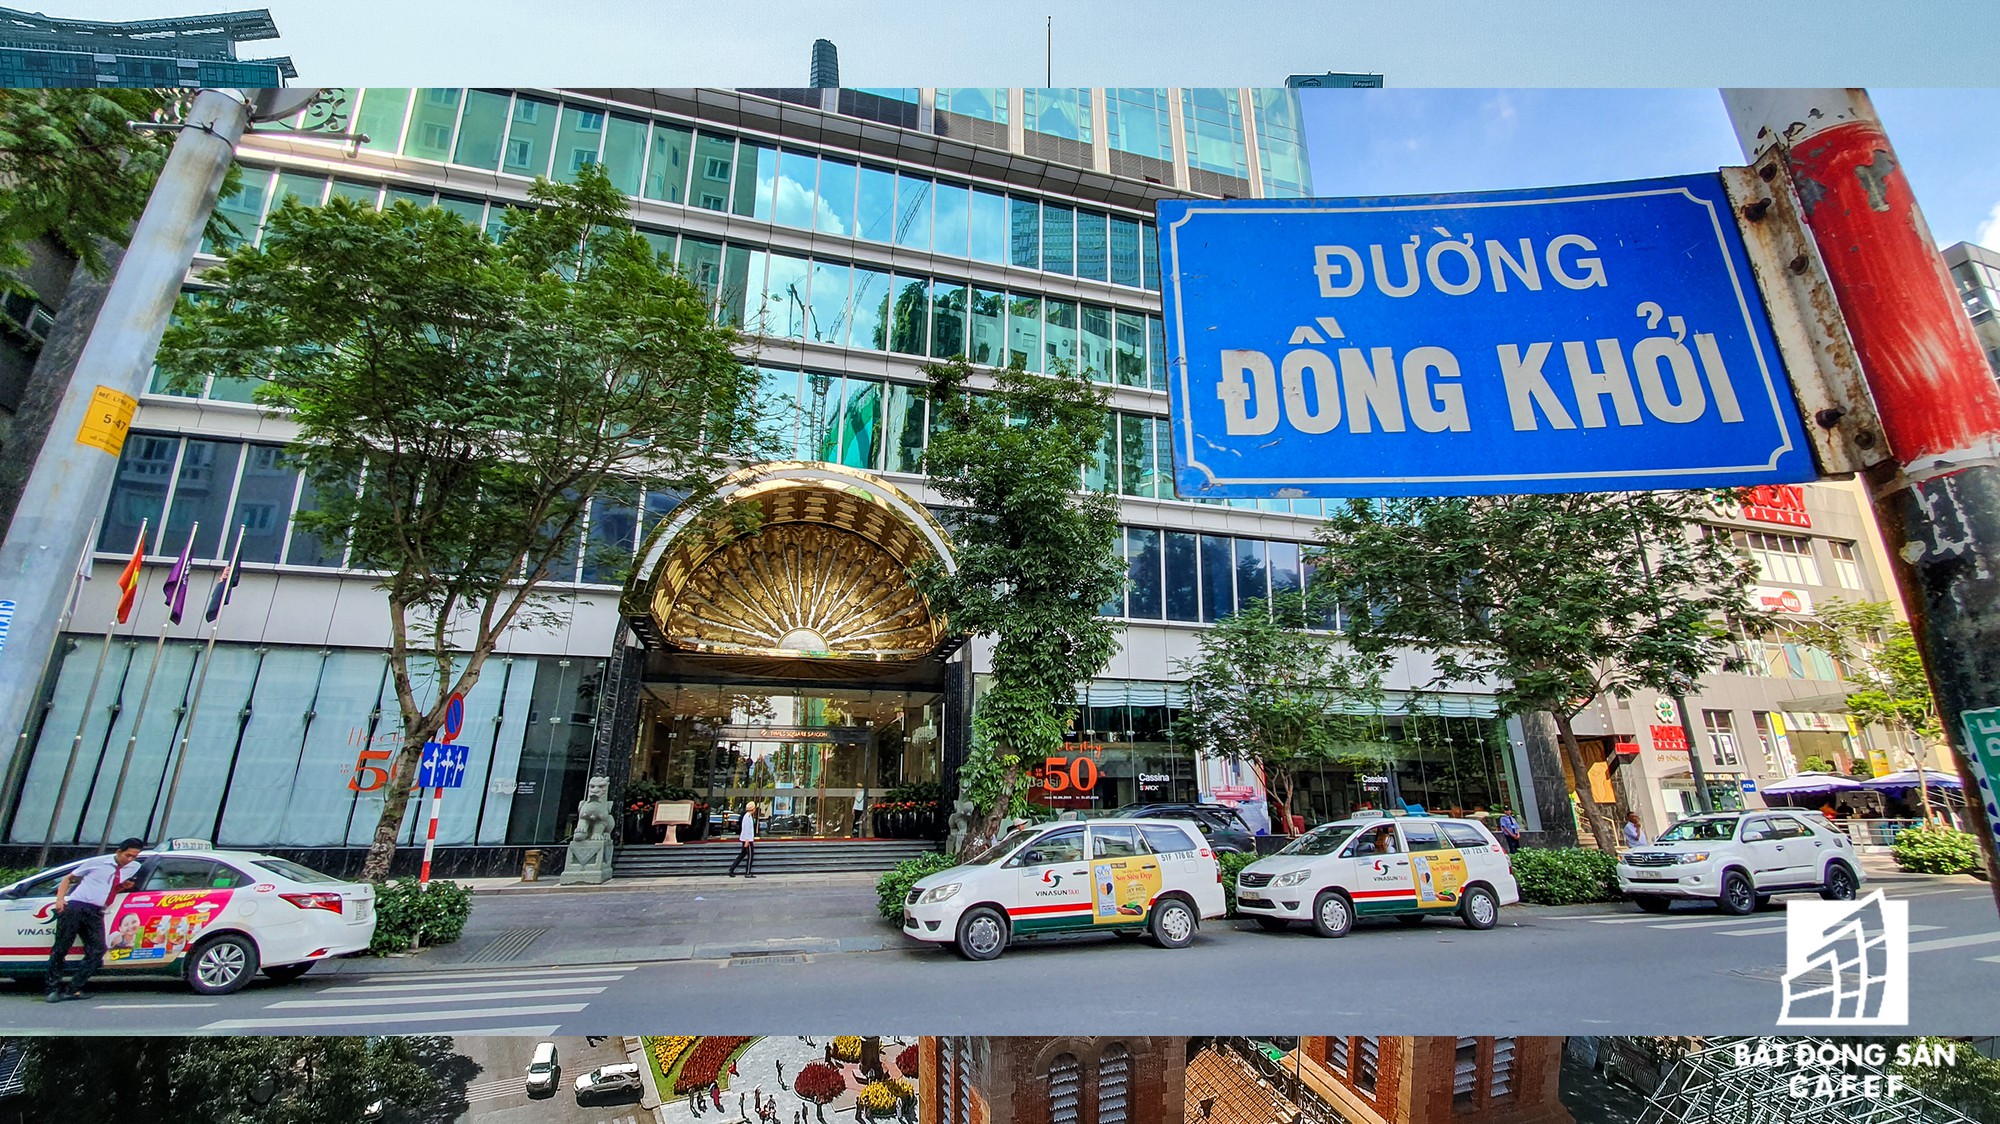 Toàn cảnh con đường có giá bất động sản đắt đỏ nhất Việt Nam, lên tới 2 tỷ đồng một m2 - Ảnh 6.